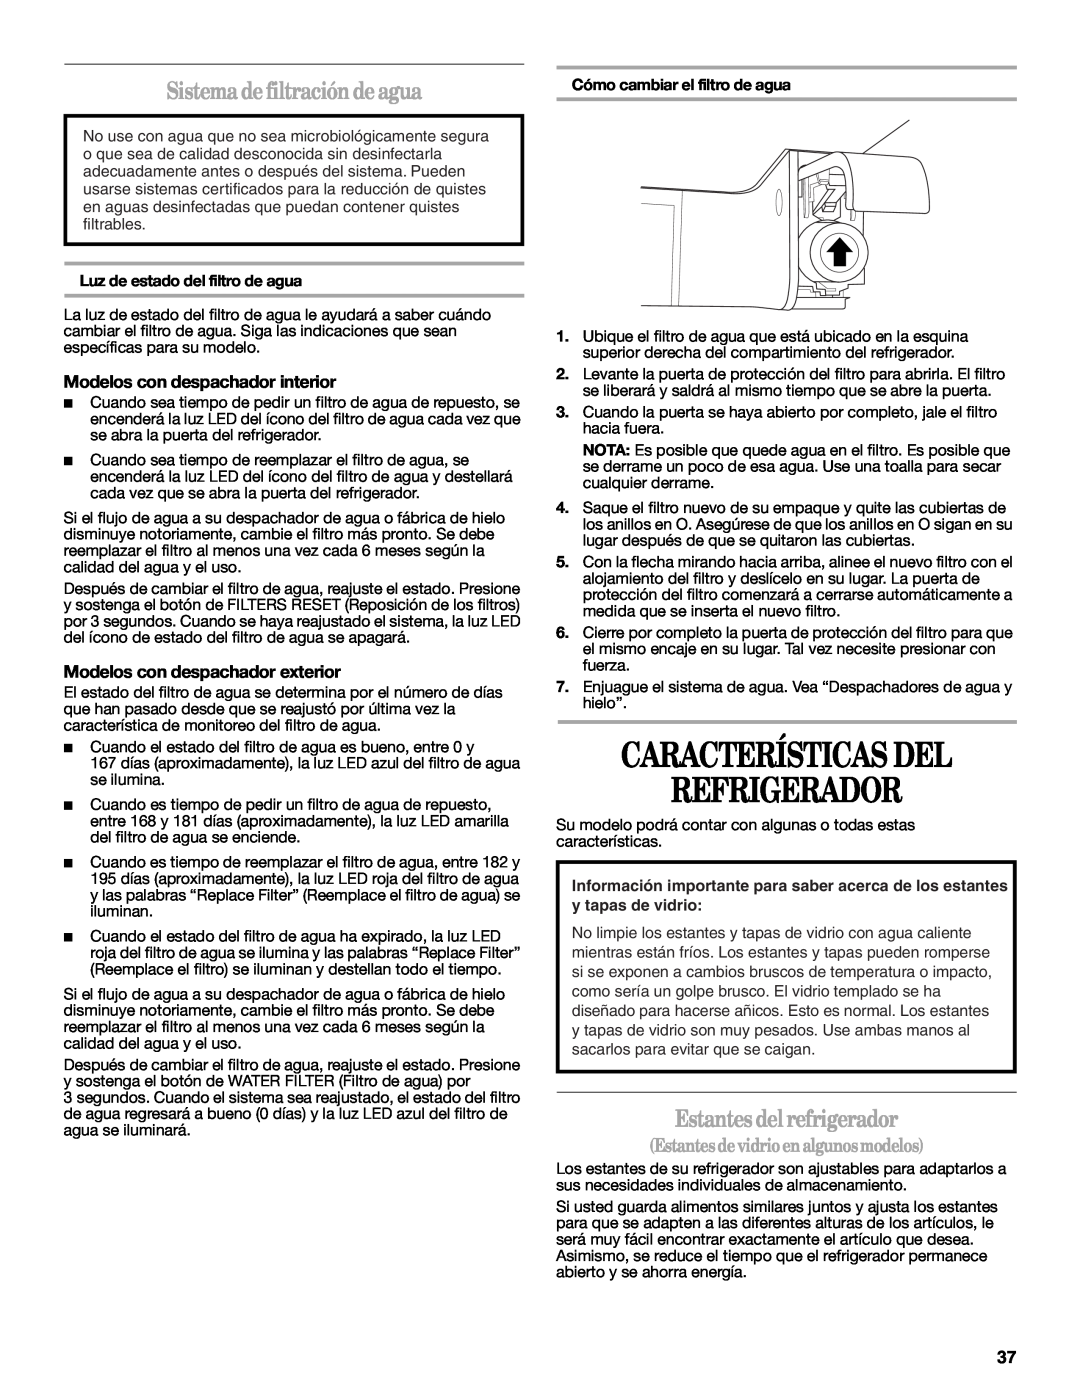 Whirlpool W10359303A Características Del Refrigerador, Sistema de filtración de agua, Estantes del refrigerador 